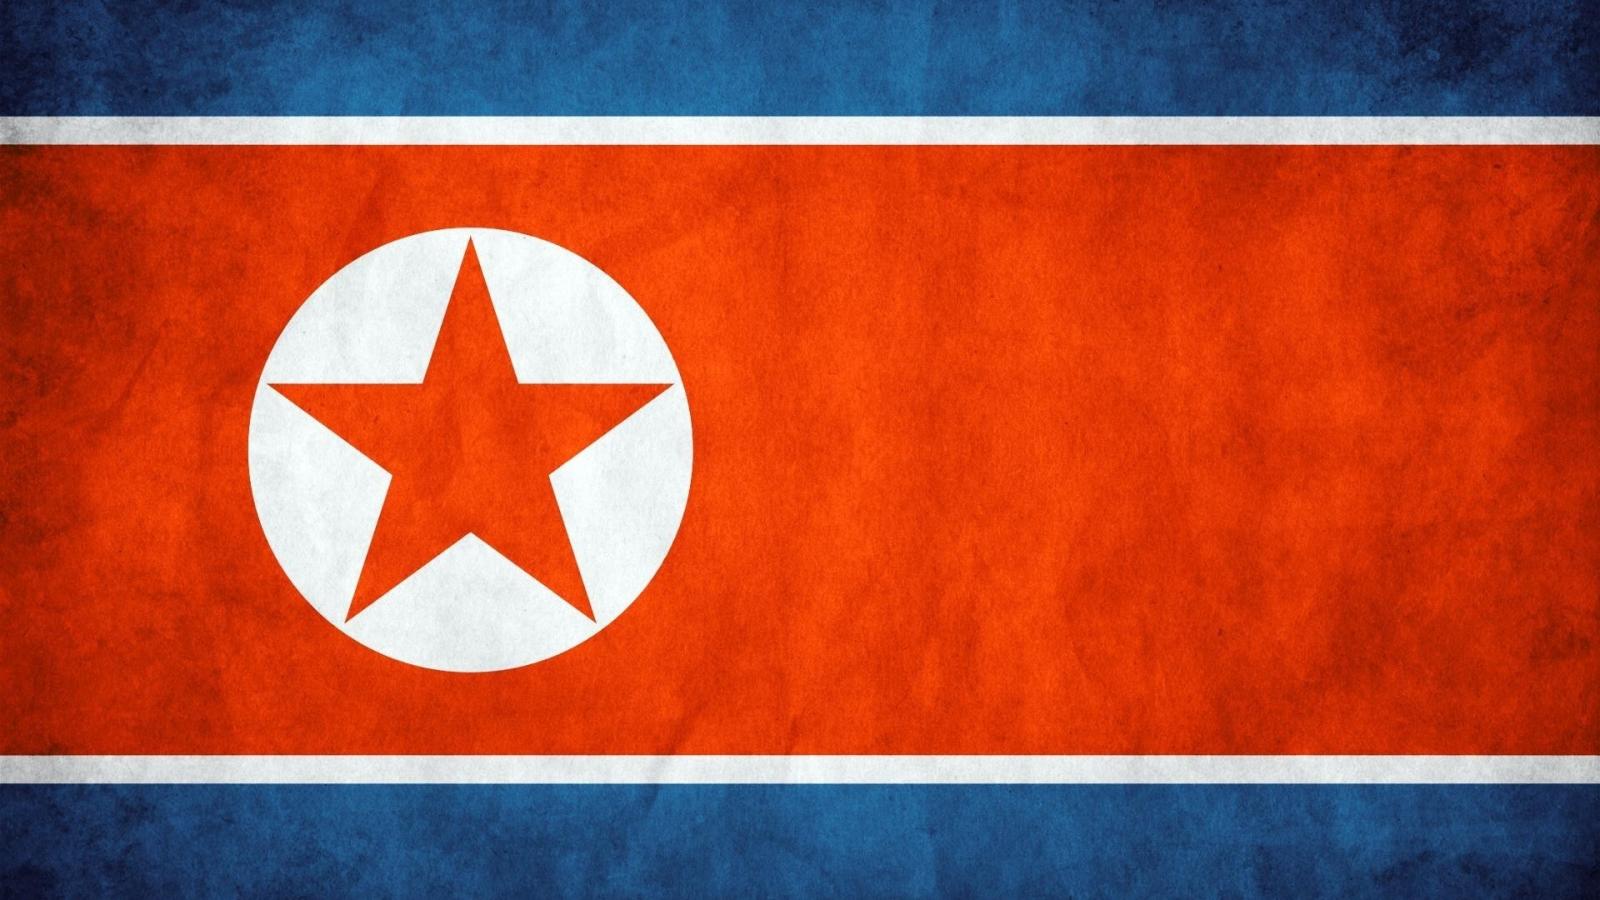 Скачать обои Флаг Северной Кореи на телефон бесплатно